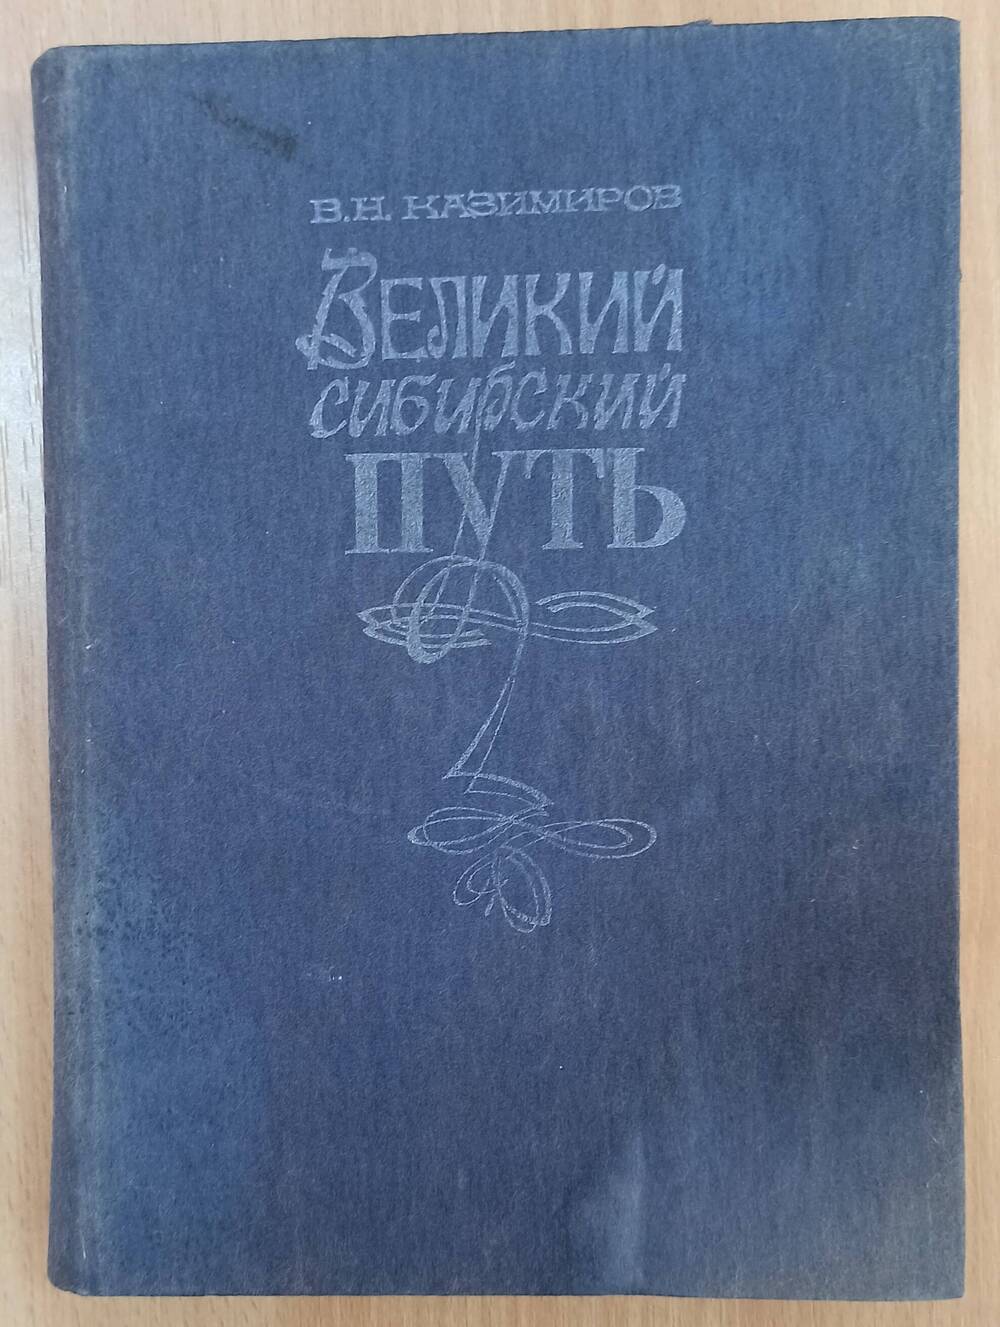 Книга Великий Сибирский путь, В.Н. Казимиров.